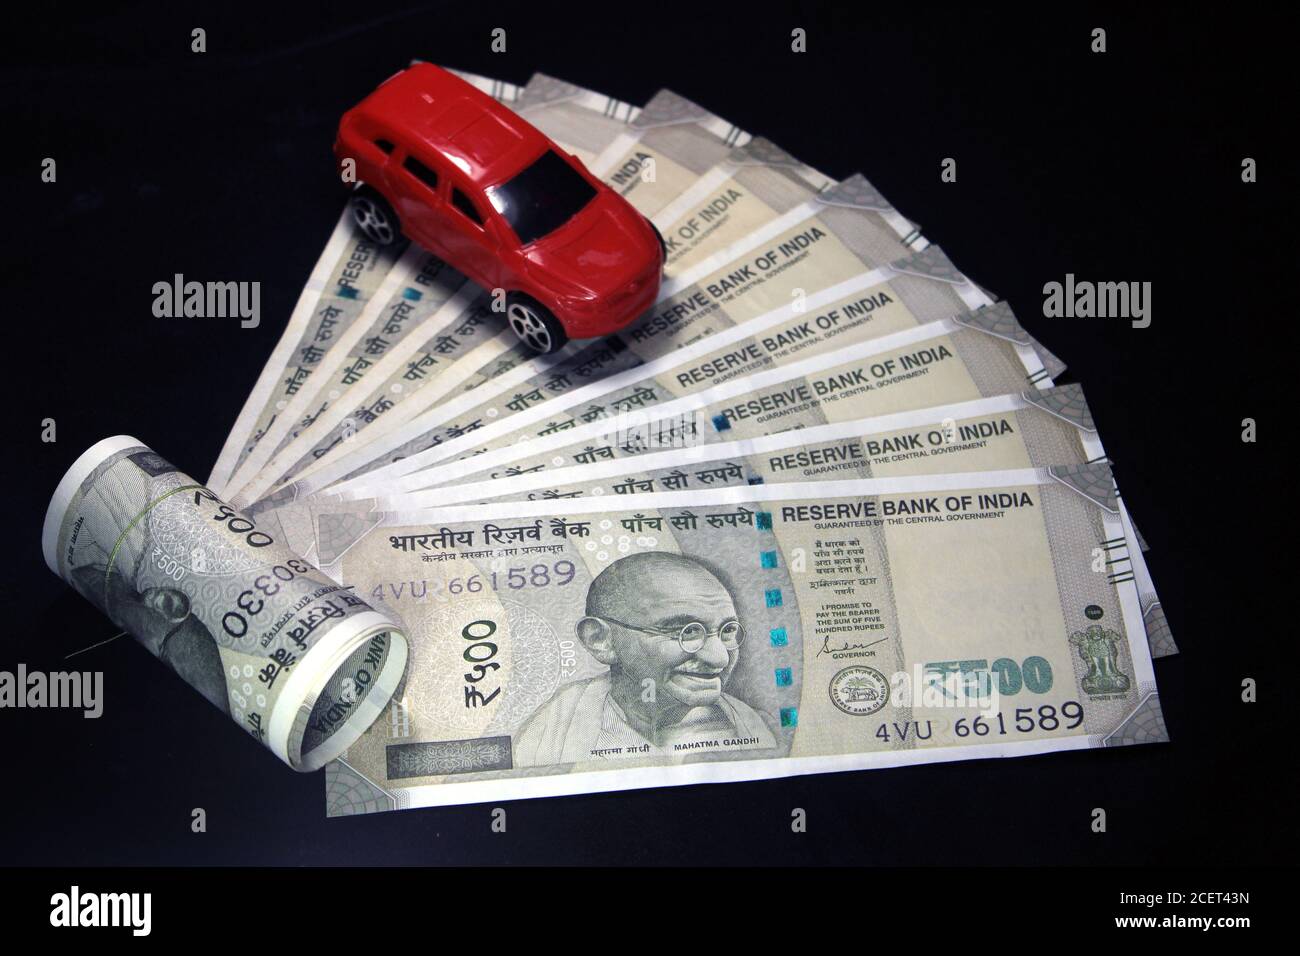 Monnaie indienne. note de 500 roupies avec voiture-jouet. Monnaie indienne isolée sur fond noir. Concept de voiture d'achat. Banque D'Images